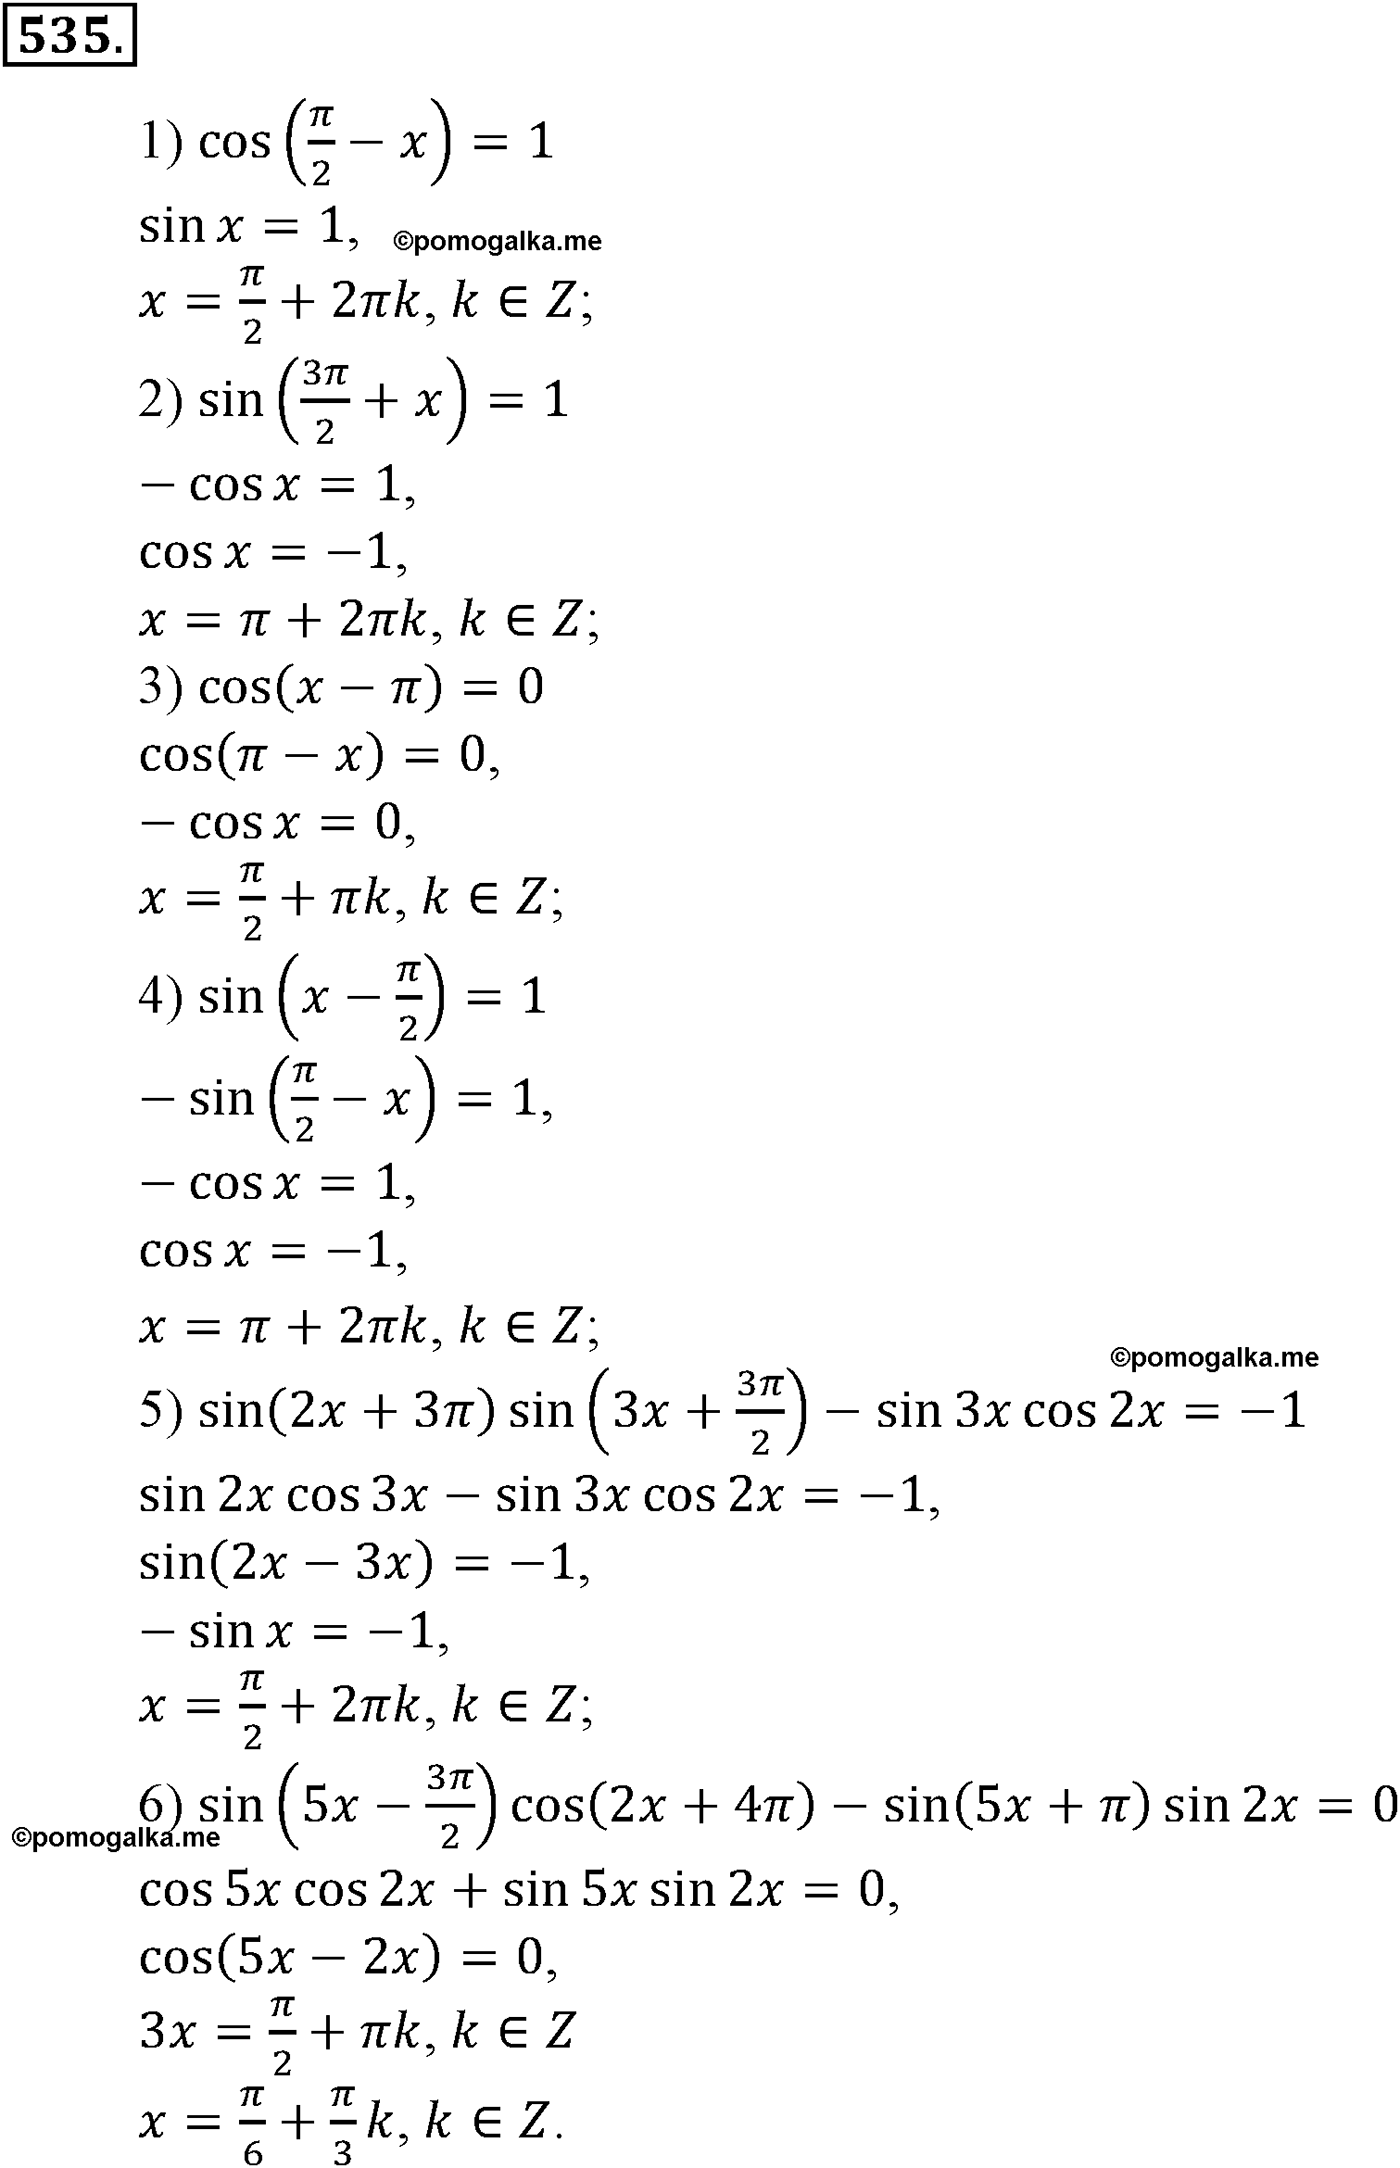 разбор задачи №535 по алгебре за 10-11 класс из учебника Алимова, Колягина